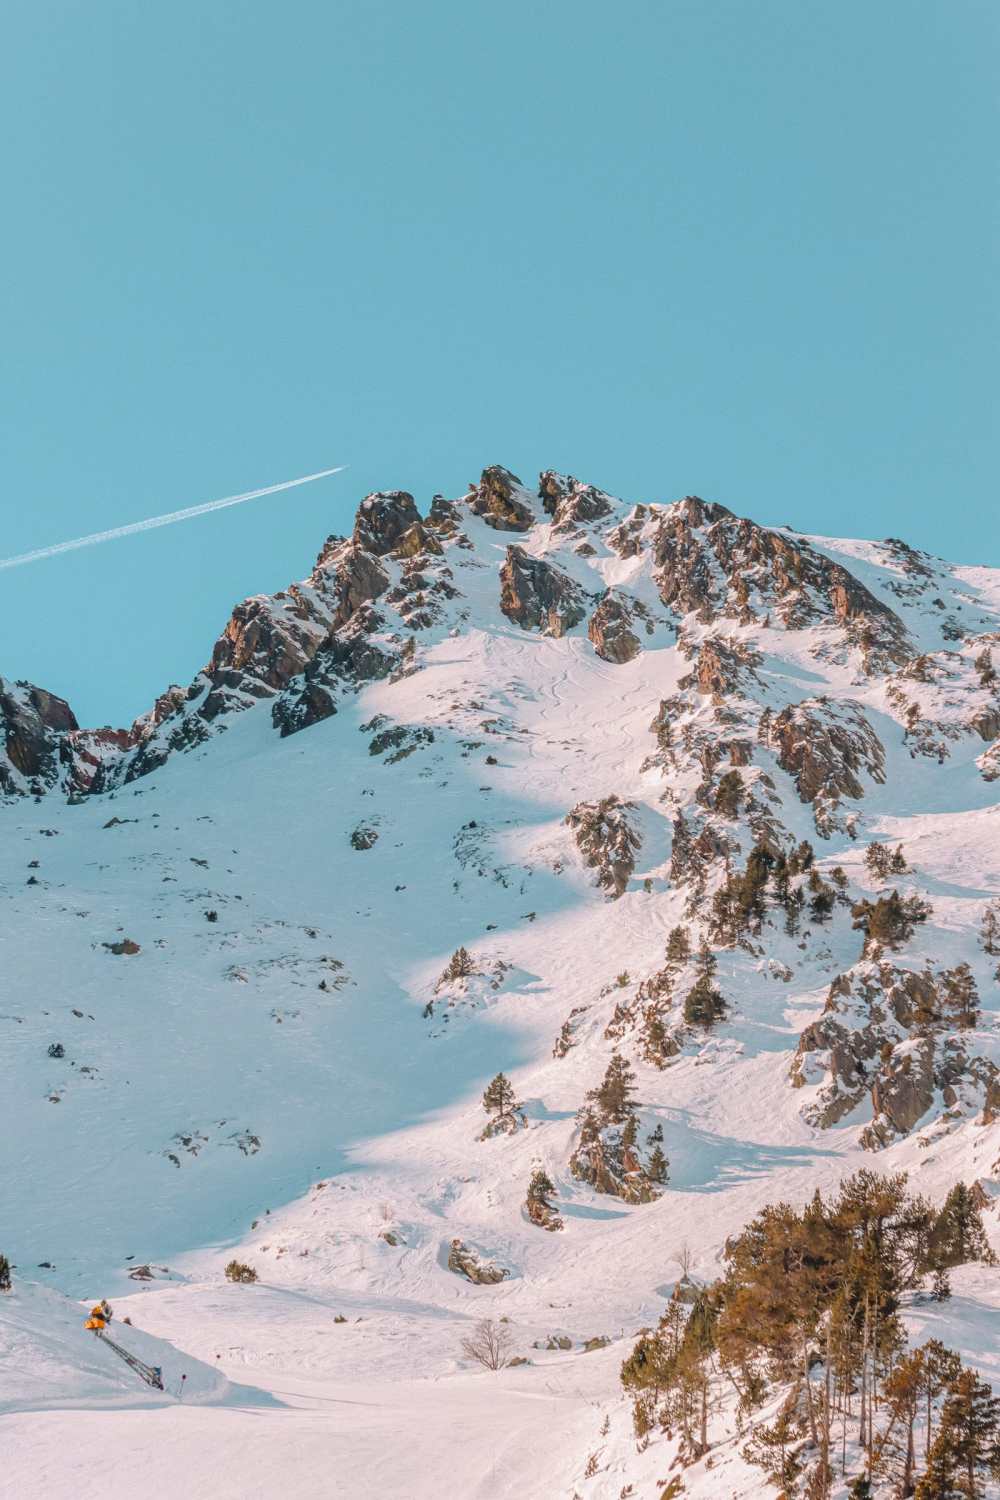 Best Things To Do In Andorra Grandvalira Ski Resort Skiing